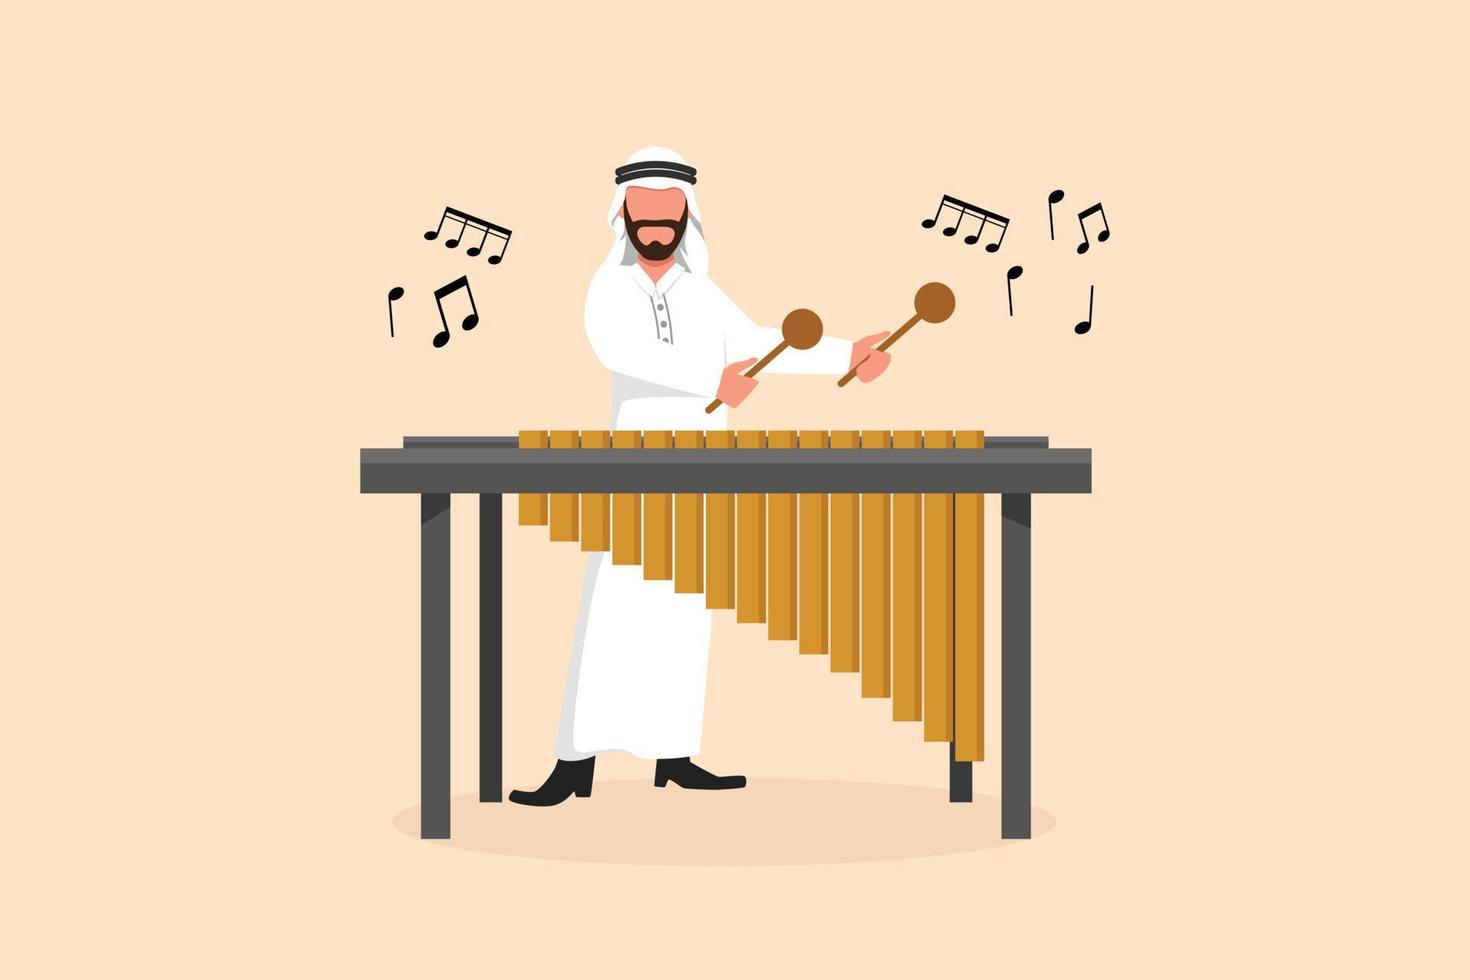 dessin de dessin animé plat d'affaires personnage de joueur de percussion homme arabe jouer marimba. musicien masculin jouant de l'instrument marimba mexicain traditionnel au festival de musique. illustration vectorielle de conception graphique vecteur